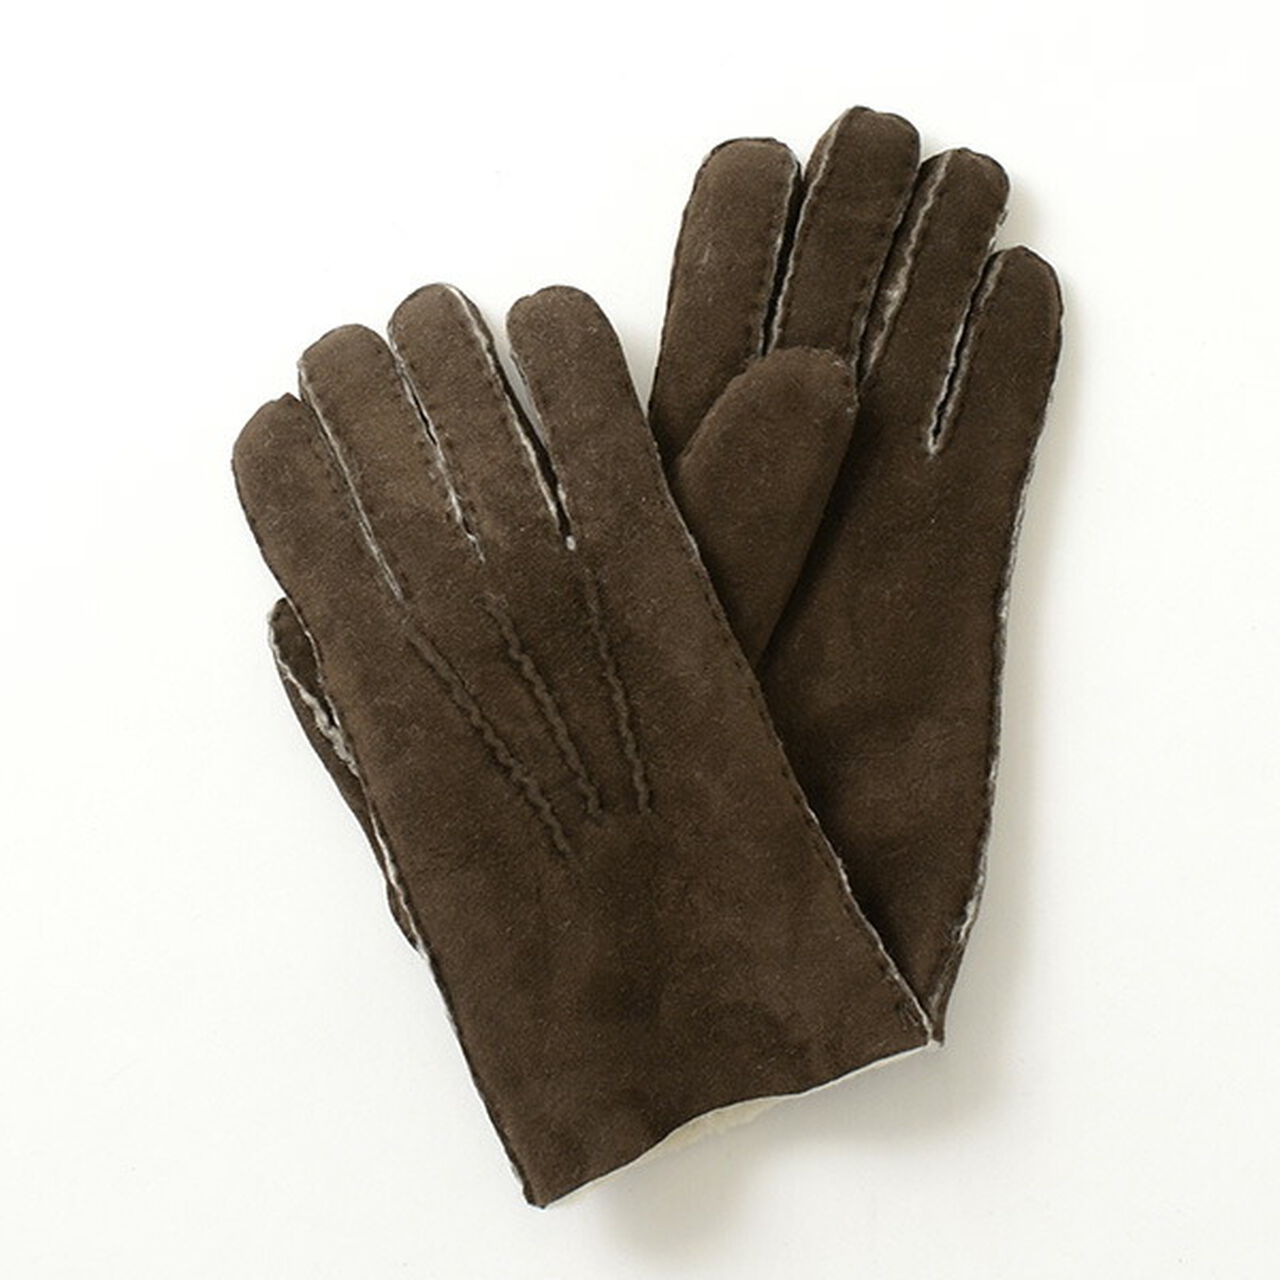 Men's Handthorn Gloves,Brown, large image number 0